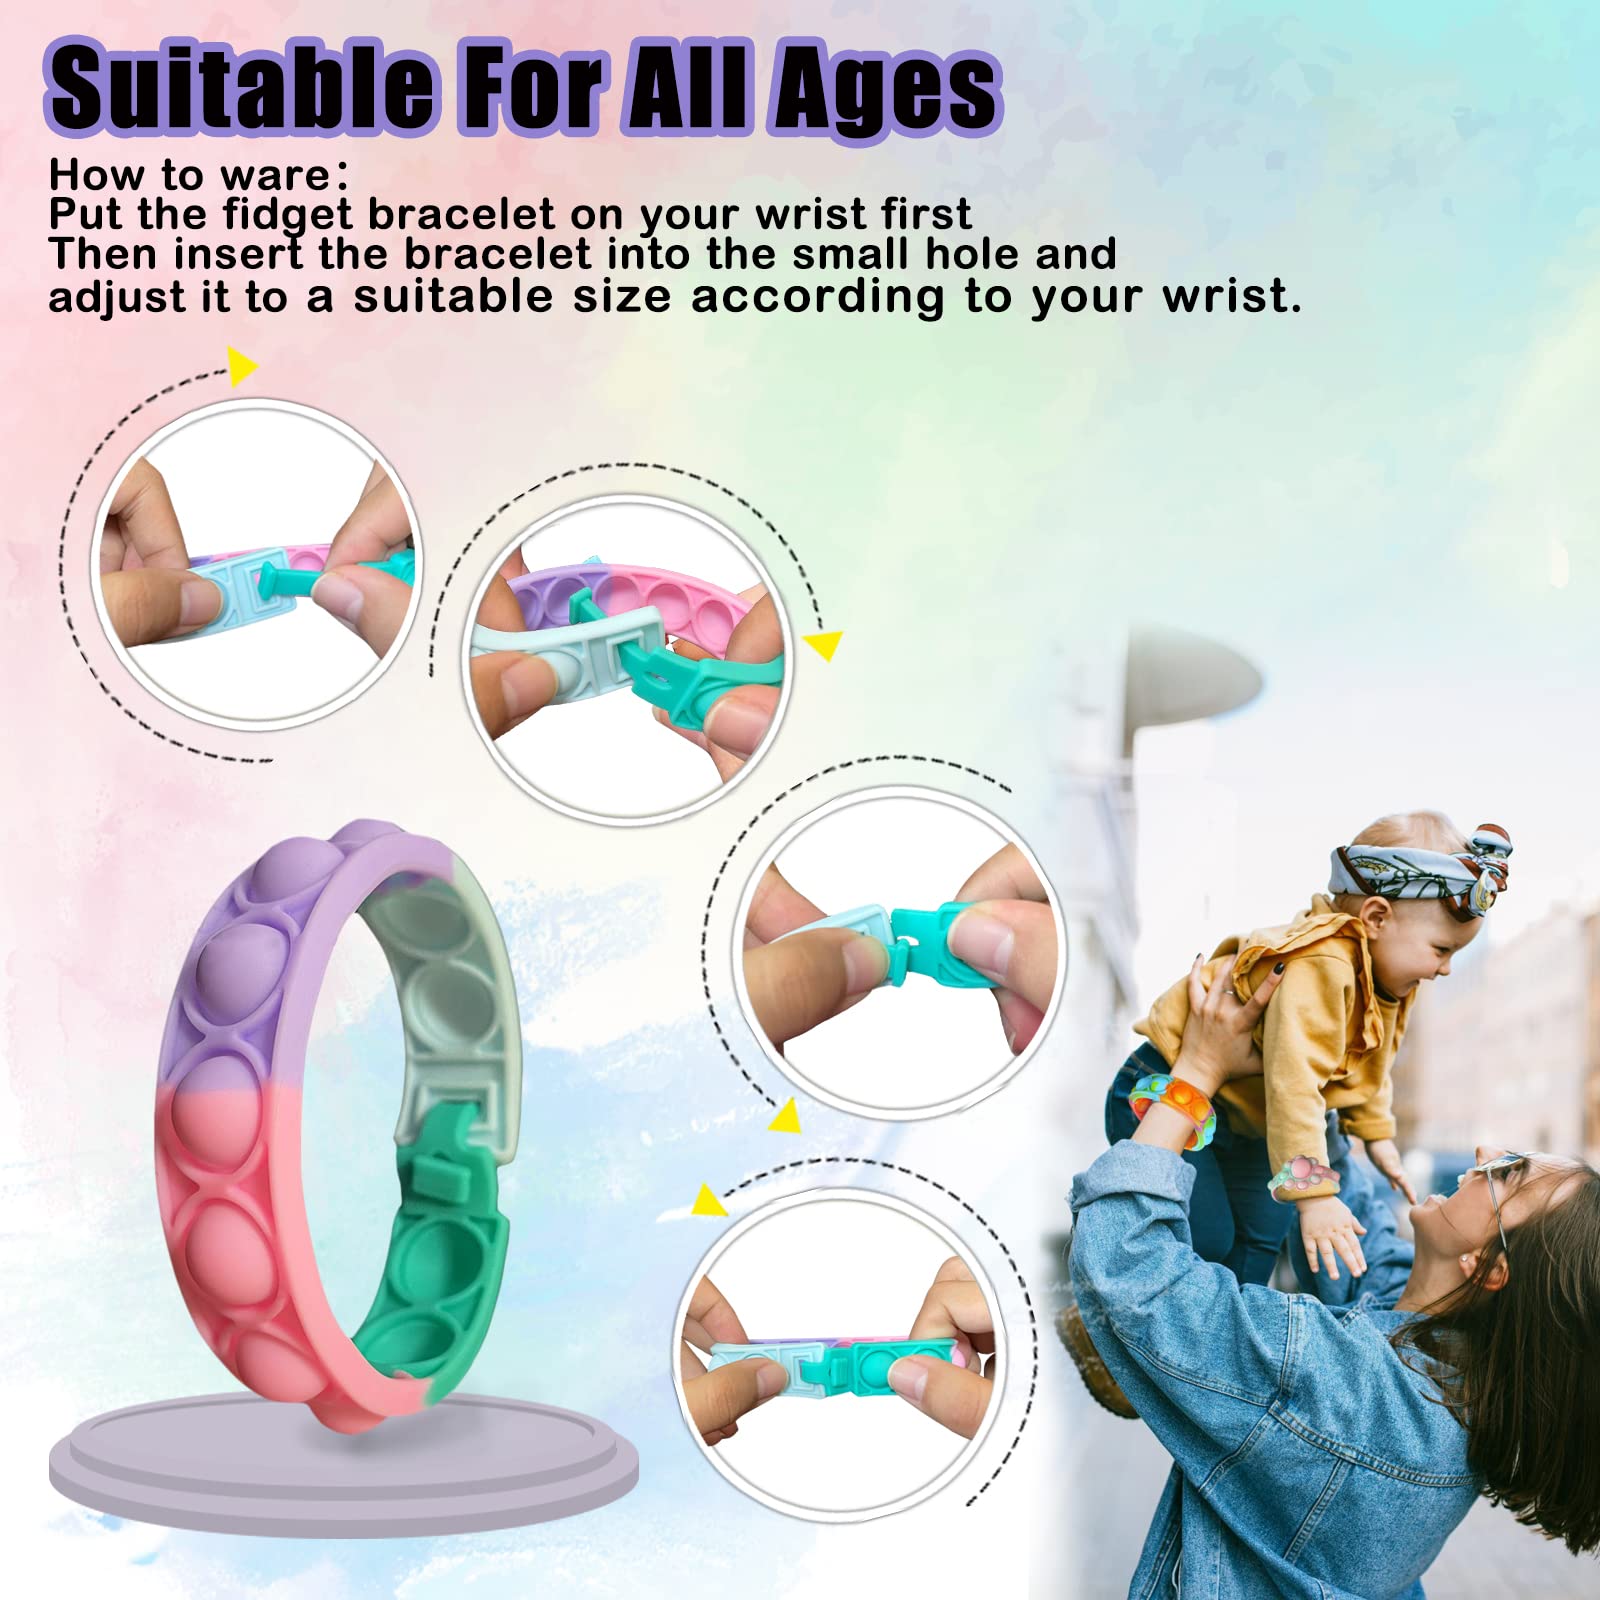 18PCS Pop Fidget Bracelets Toys, Wristband Fidget Toys Sets, Adjustable Stress Relief Push Pop Bubbles Fidget Sensory Toy Wearable for Kids and Adults